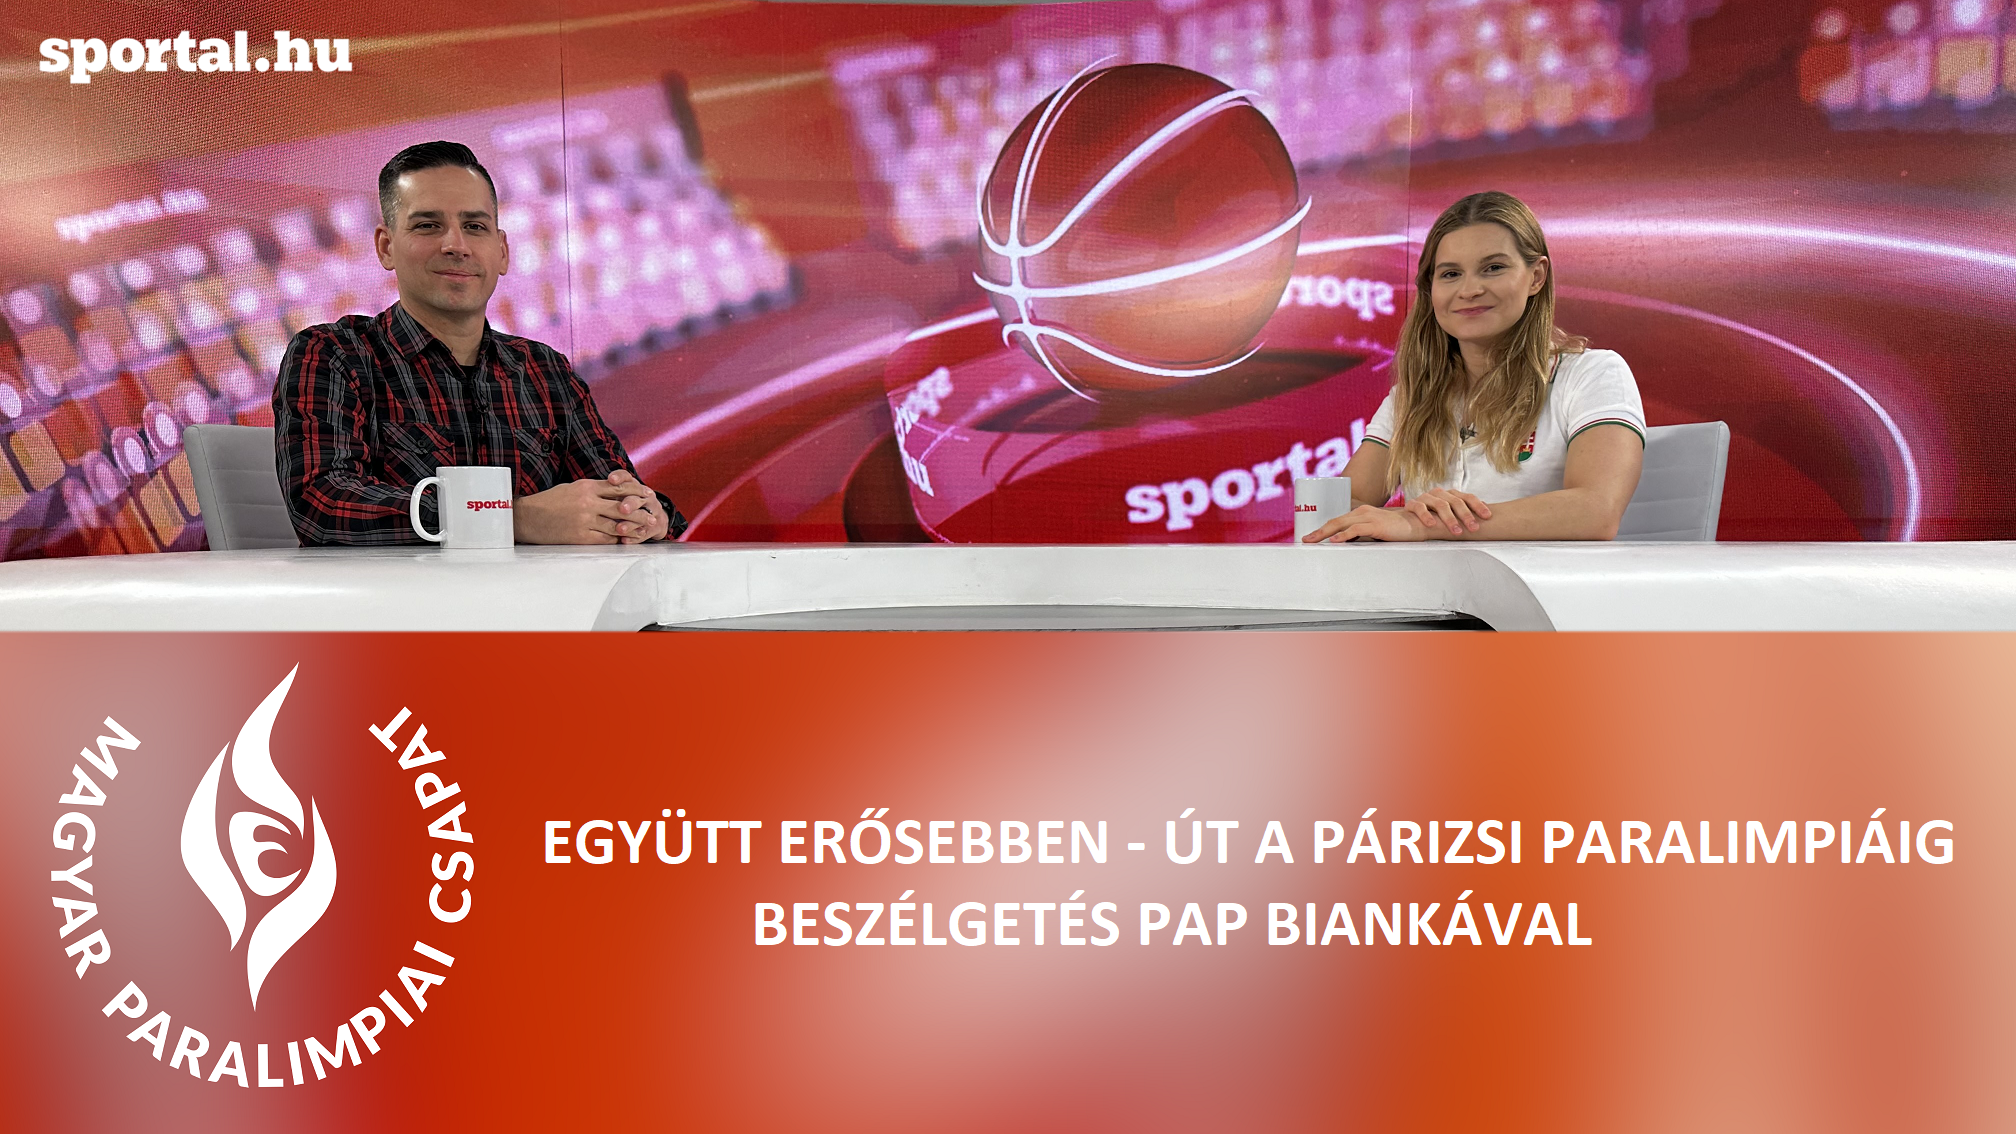 A Sportál Tv stúdiójában Pap Bianka